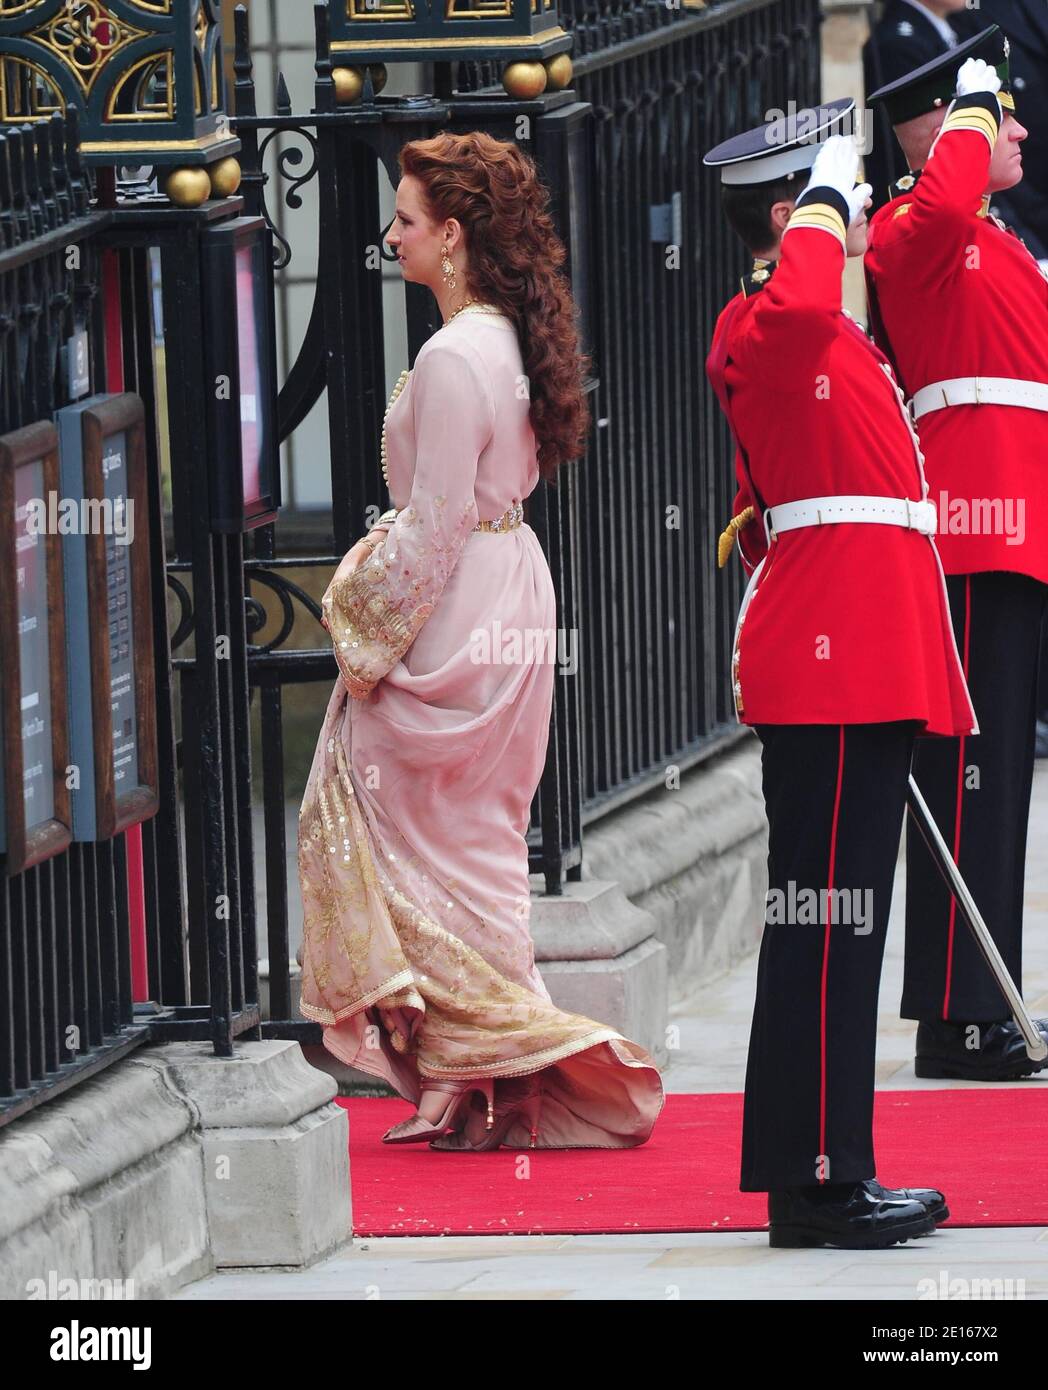 Principessa Lalla Salma del Marocco che arriva all'Abbazia di Westminster per il matrimonio del Principe William con Kate Middleton, a Londra, Regno Unito, il 29 aprile 2011. Foto di Frederic Nebinger/ABACAPRESS.COM Foto Stock